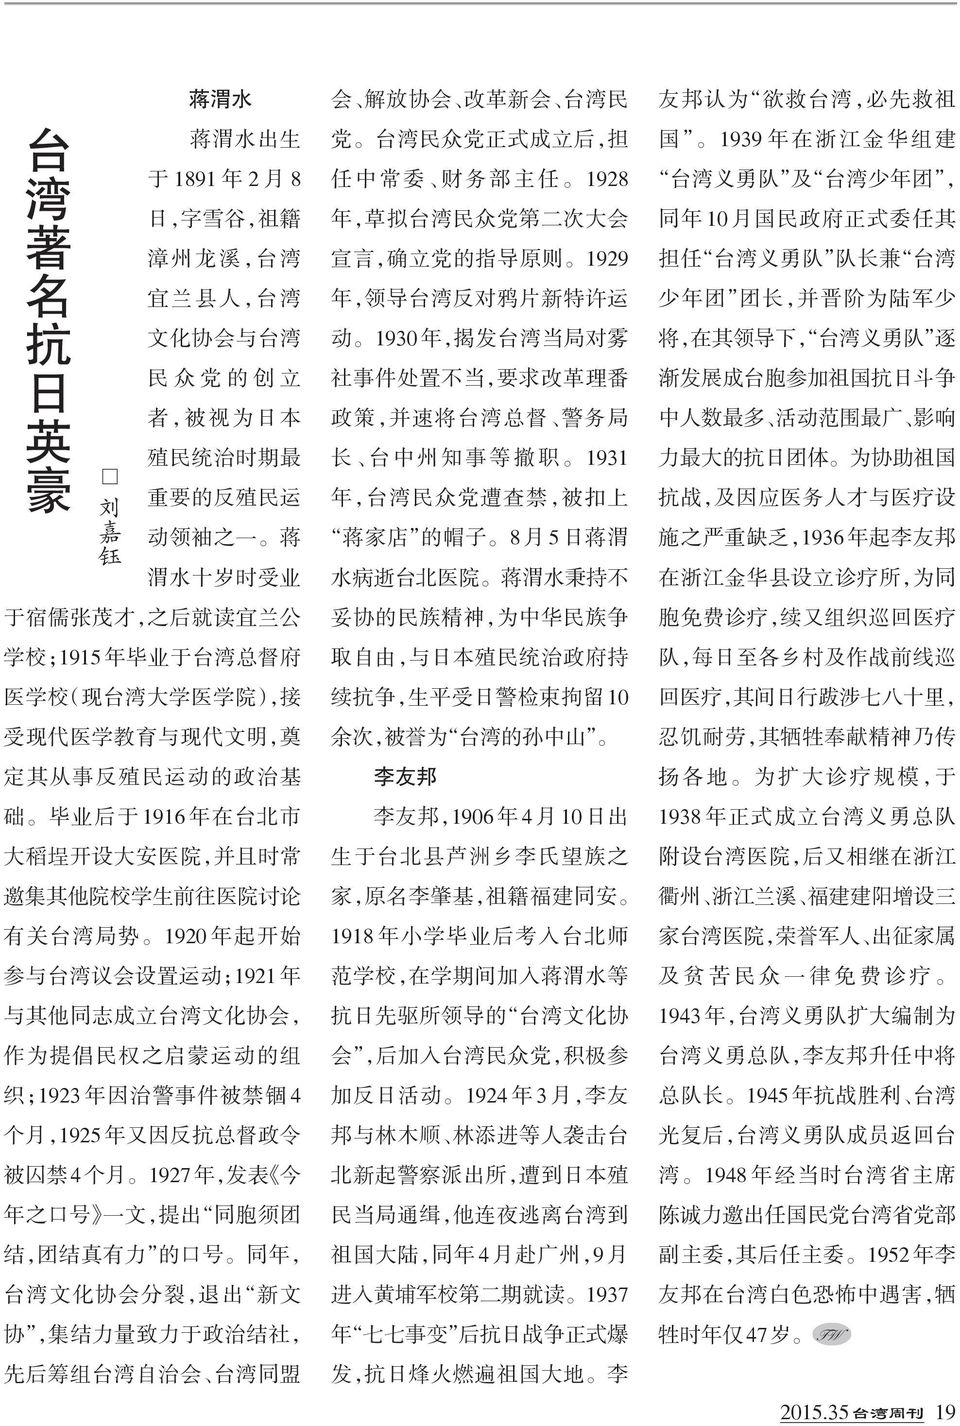 讨 论 有 关 台 湾 局 势 1920 年 起 开 始 参 与 台 湾 议 会 设 置 运 动 ;1921 年 与 其 他 同 志 成 立 台 湾 文 化 协 会, 作 为 提 倡 民 权 之 启 蒙 运 动 的 组 织 ;1923 年 因 治 警 事 件 被 禁 锢 4 个 月,1925 年 又 因 反 抗 总 督 政 令 被 囚 禁 4 个 月 1927 年, 发 表 今 年 之 口 号